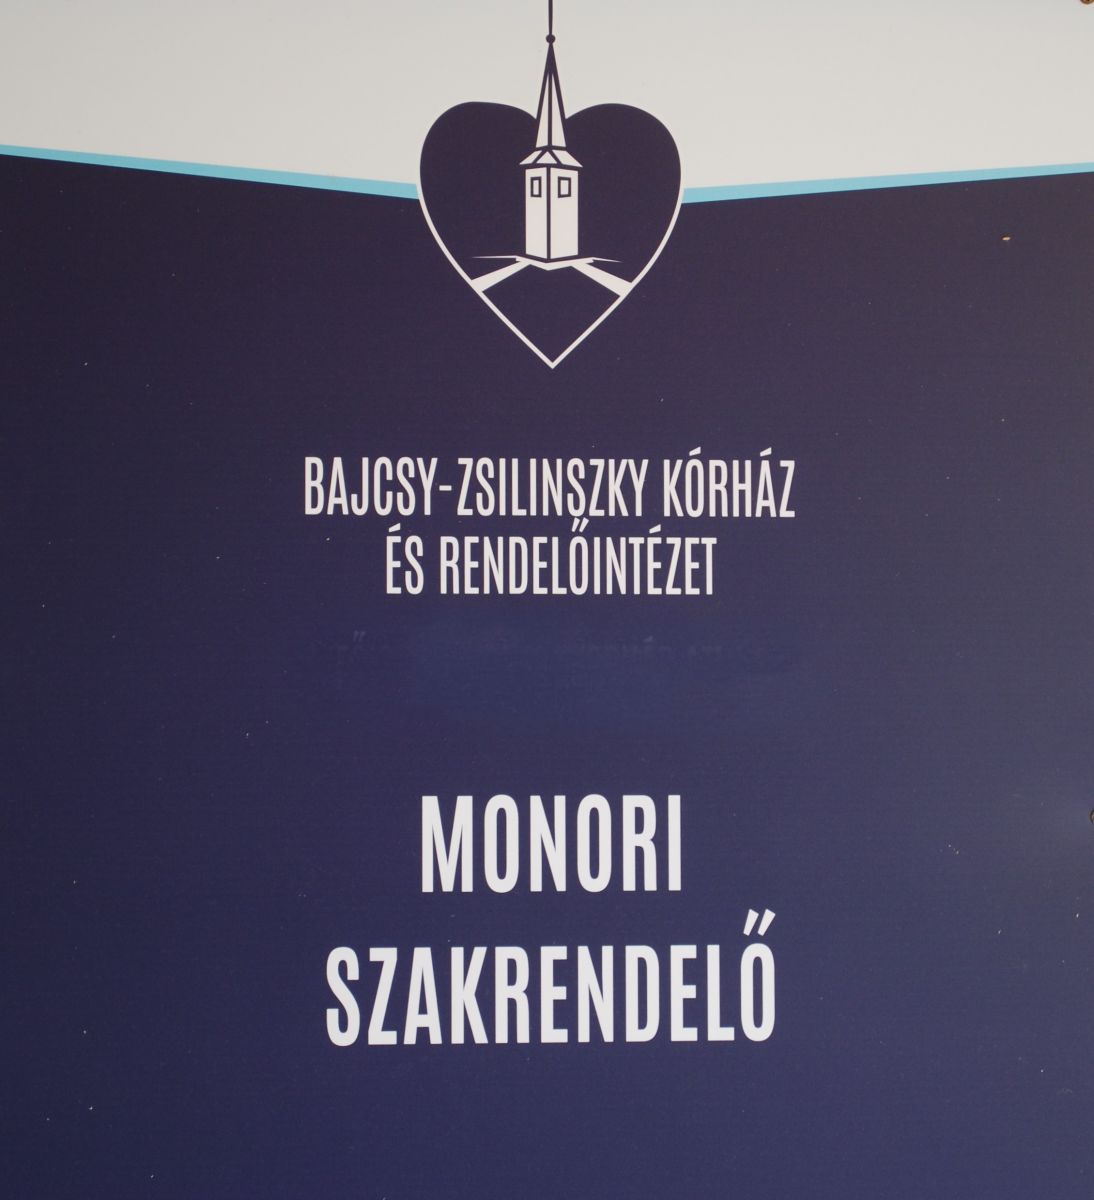 Rendelési idő változás a Budapesti Bajcsy-Zsilinszky Kórház és Rendelőintézet Monori Rendelőintézetében